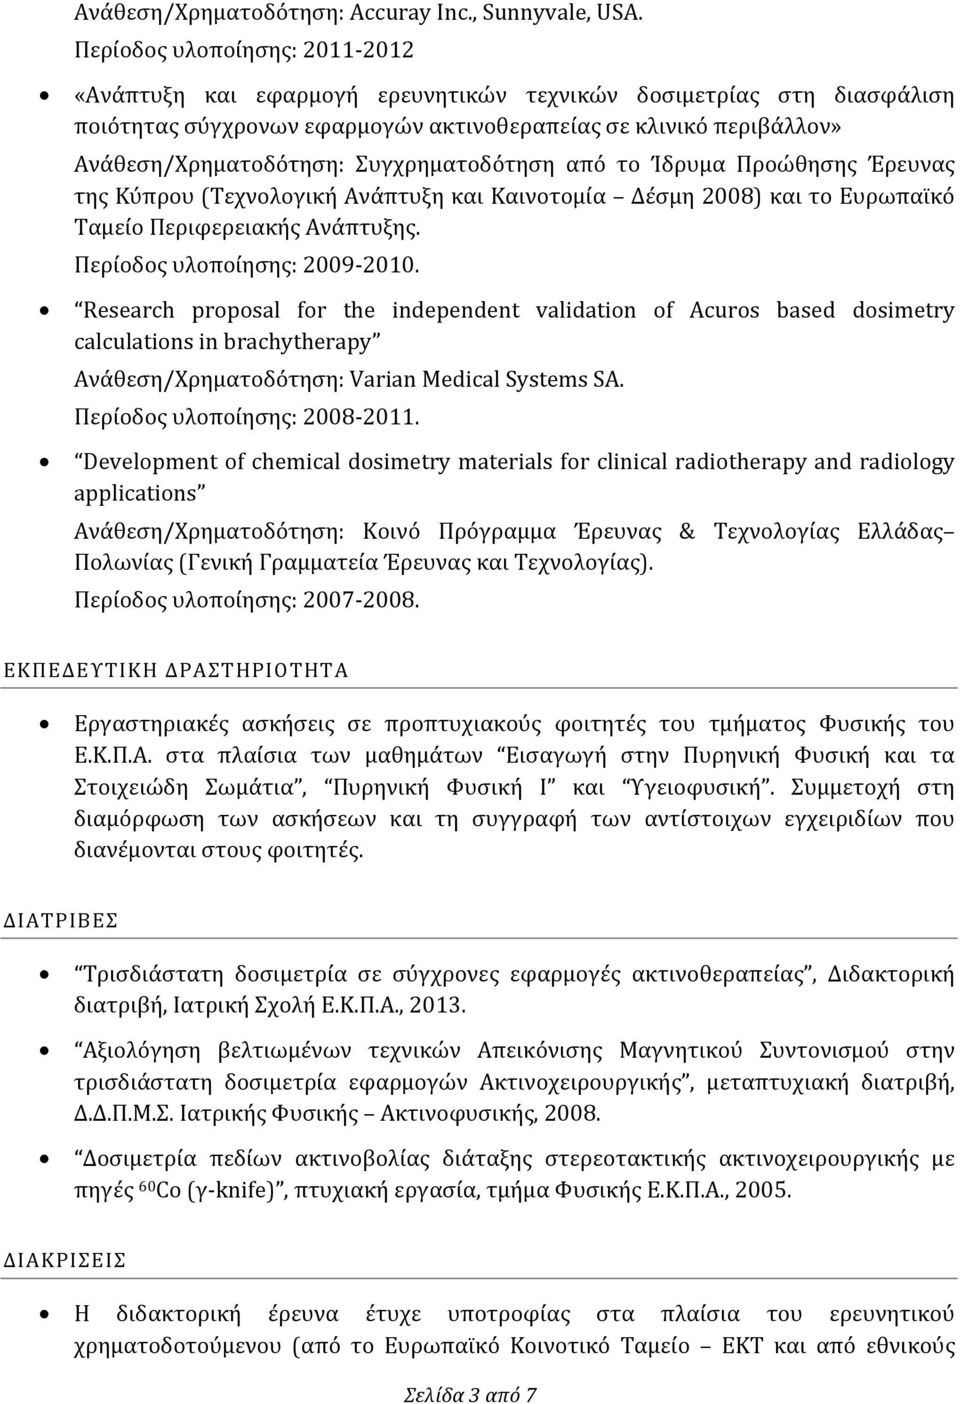 Συγχρηματοδότηση από το Ίδρυμα Προώθησης Έρευνας της Κύπρου (Τεχνολογική Ανάπτυξη και Καινοτομία Δέσμη 2008) και το Ευρωπαϊκό Ταμείο Περιφερειακής Ανάπτυξης. Περίοδος υλοποίησης: 2009-2010.